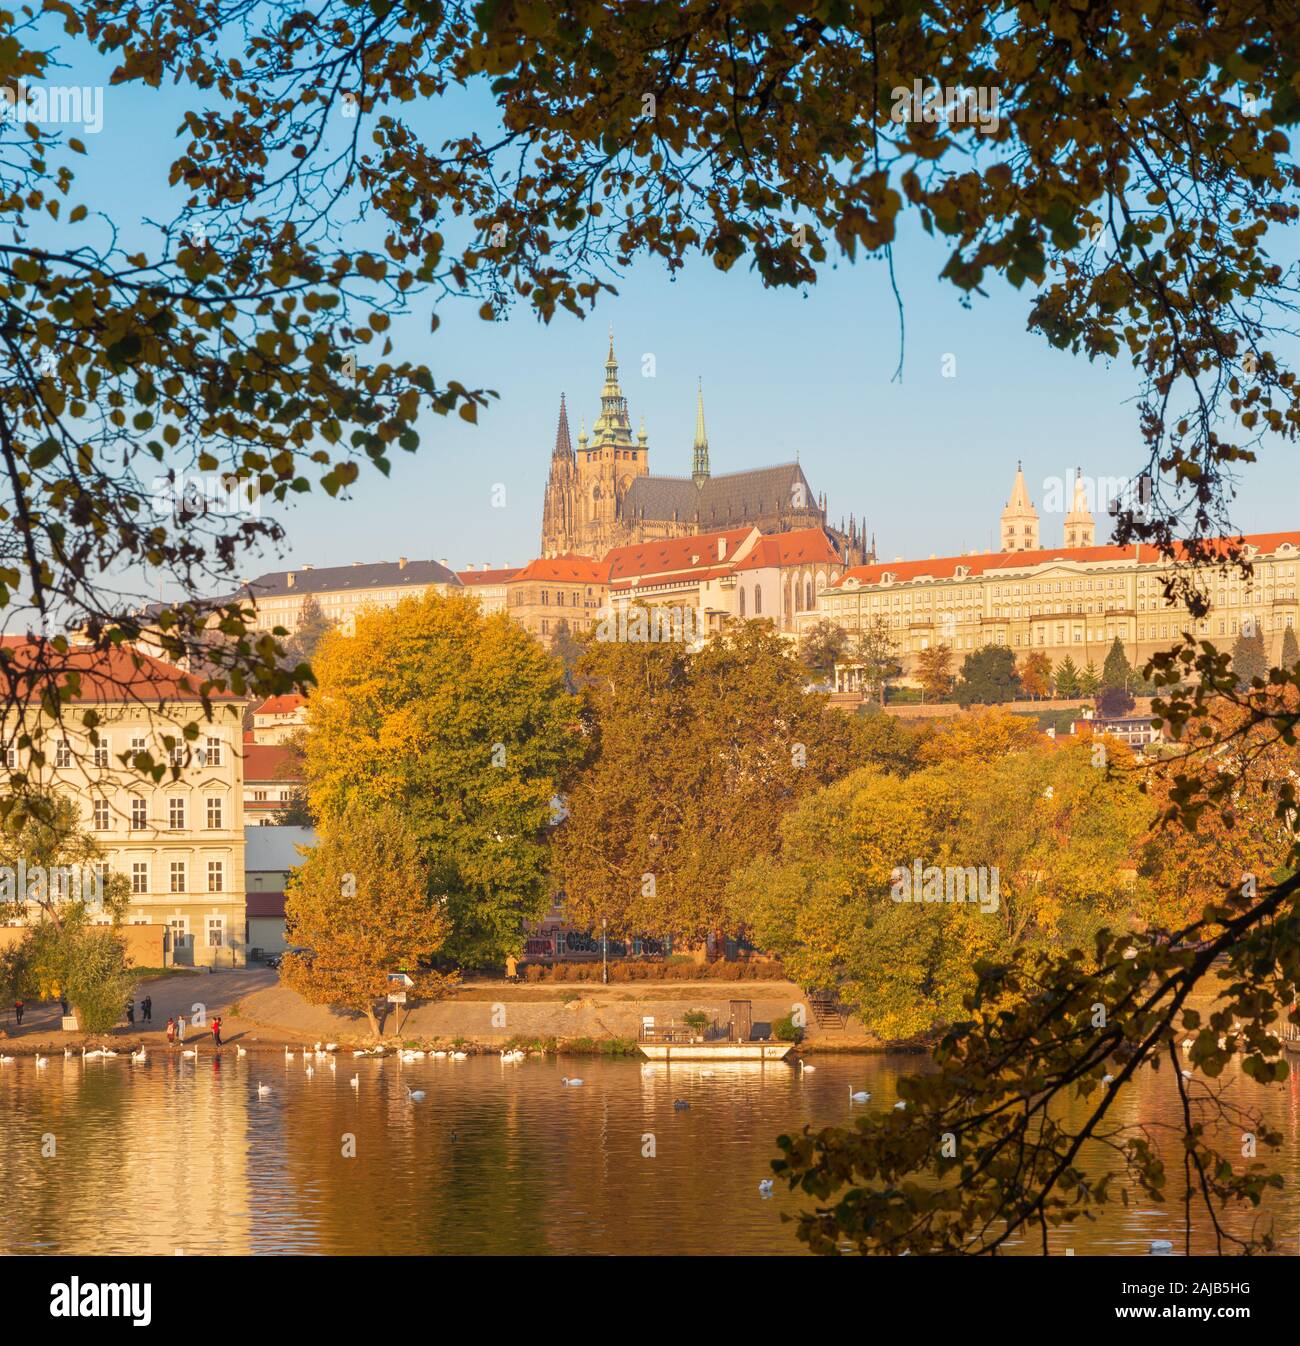 Prag, tschechische Republik - 11. Oktober 2018: Die Burg und die Kathedrale von der Moldau und im Herbst Blätter. Stockfoto